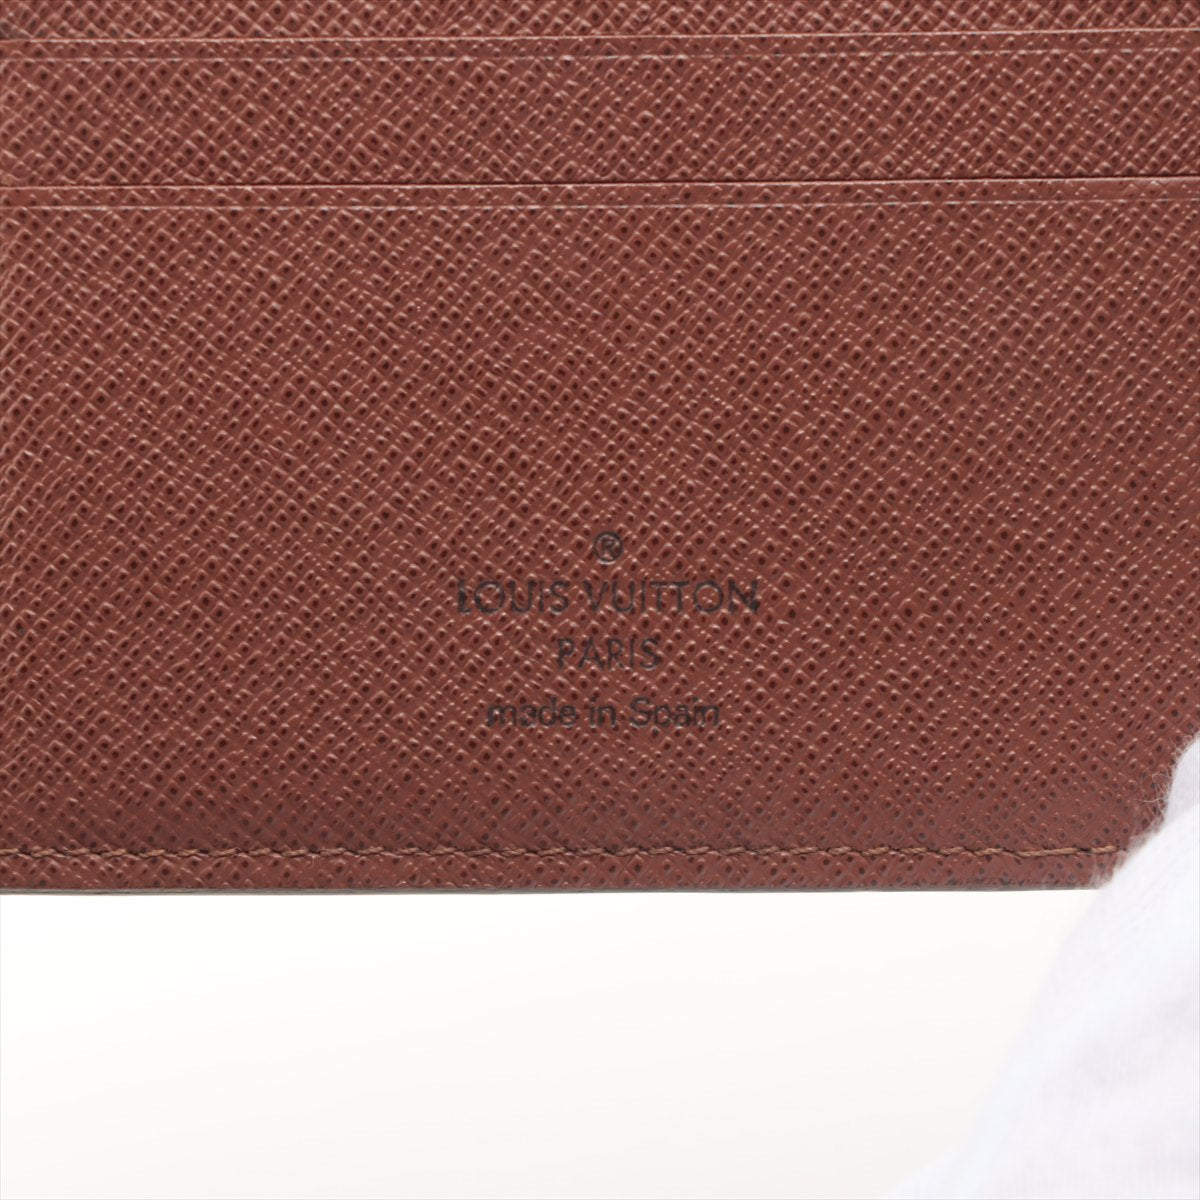 Purses, Wallets, Cases Louis Vuitton Monogram Canvas Pallas NM CompactWallet Red Flap